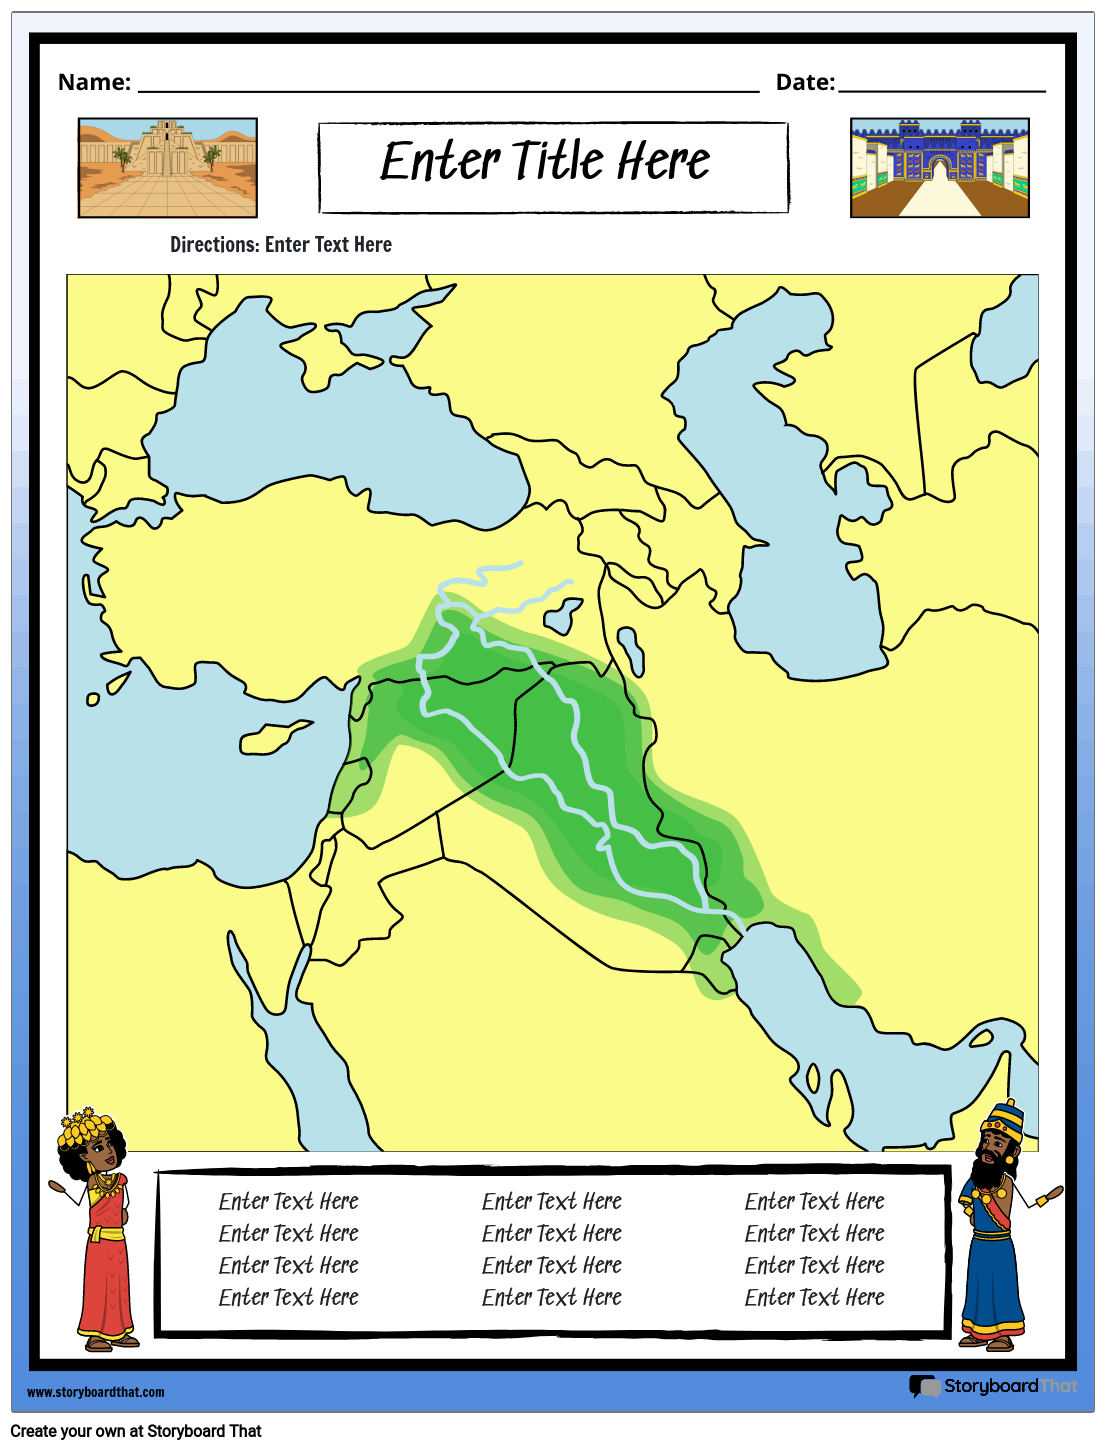 Kort Over Mesopotamien